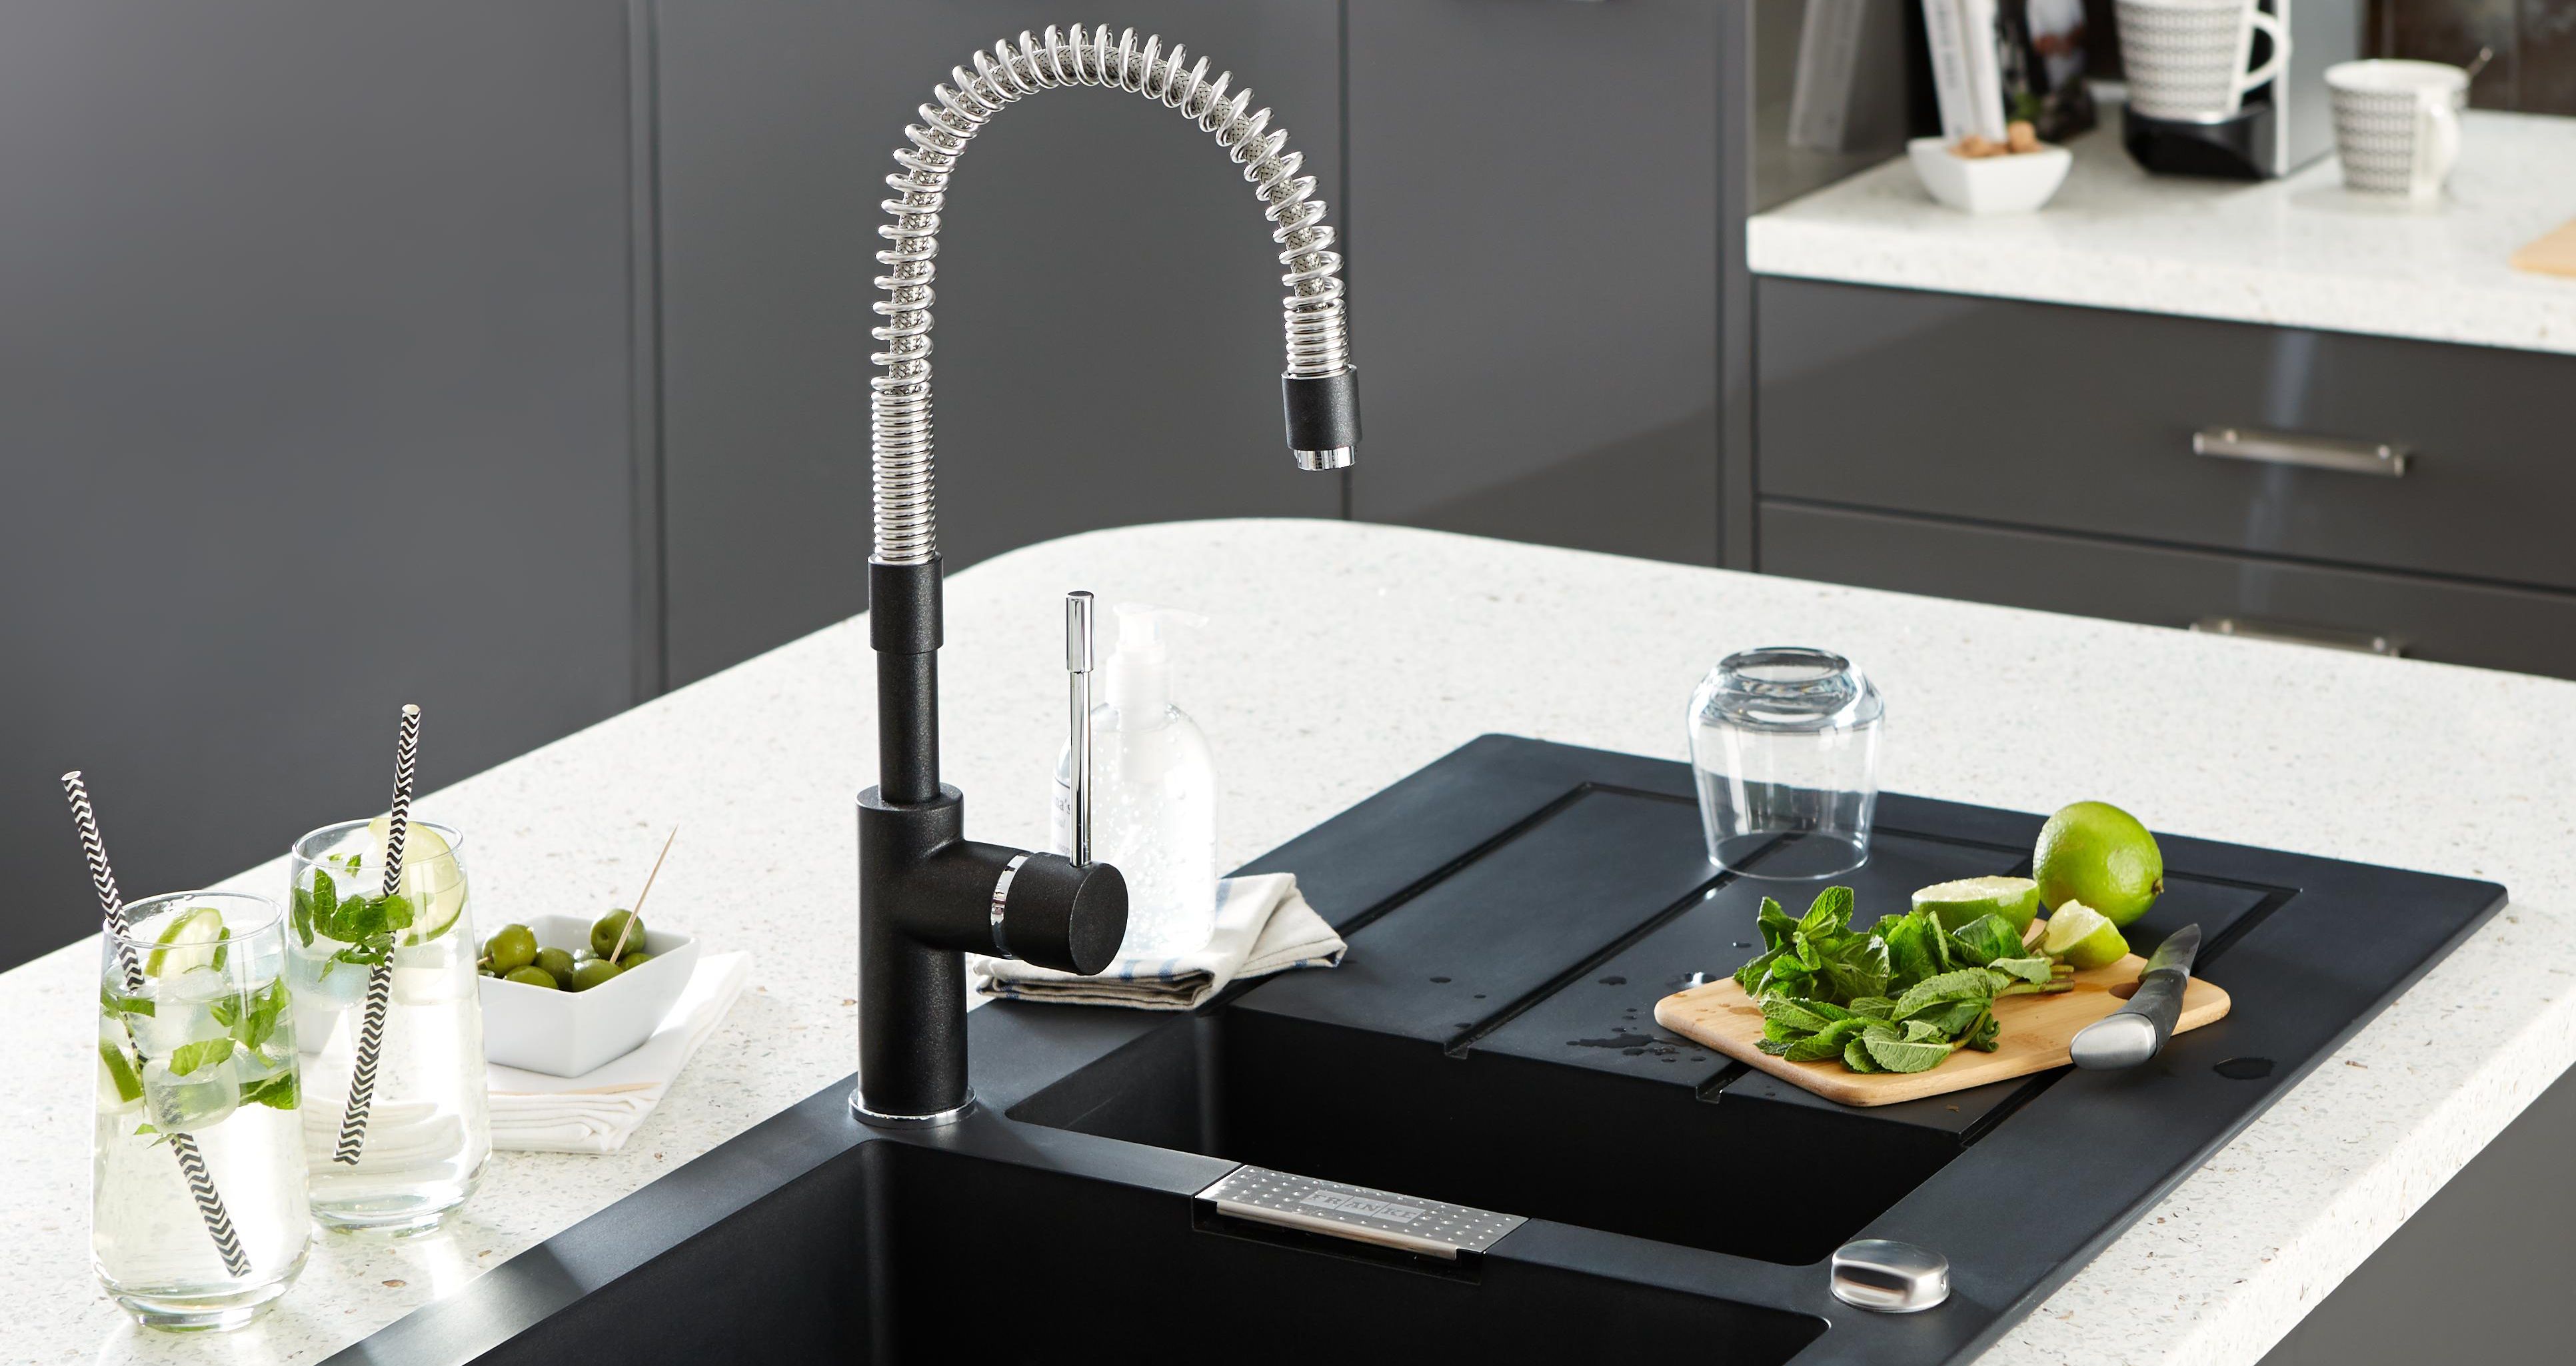 woodies kitchen sink taps